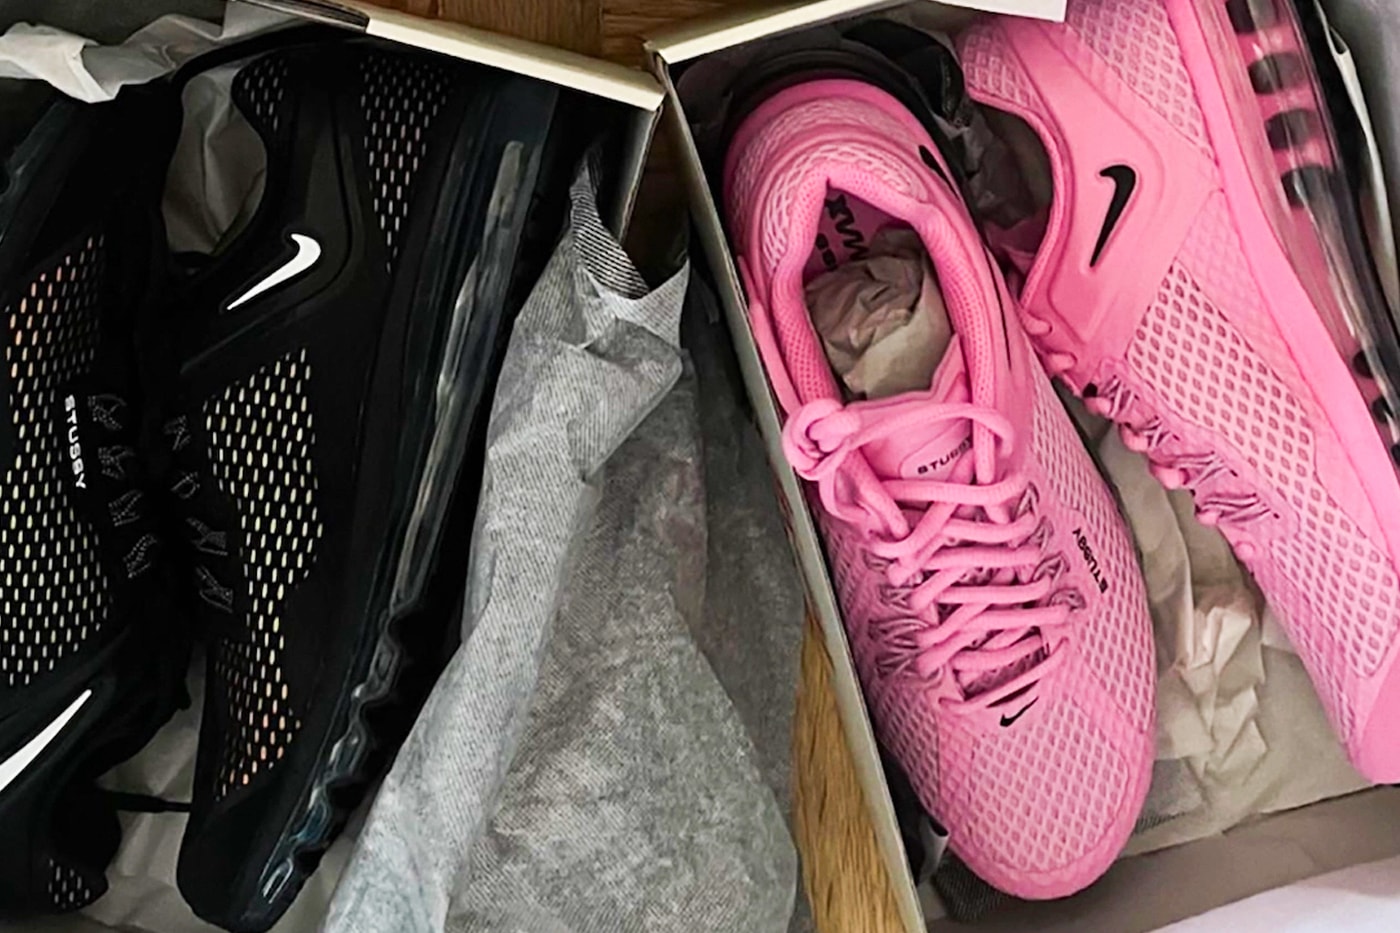 ステューシー x ナイキの最新コラボ エアマックス 2015 に別カラーの存在が浮上 Stüssy Nike Air Max 2015 Black Pink First Look Release Info Date Buy Price 